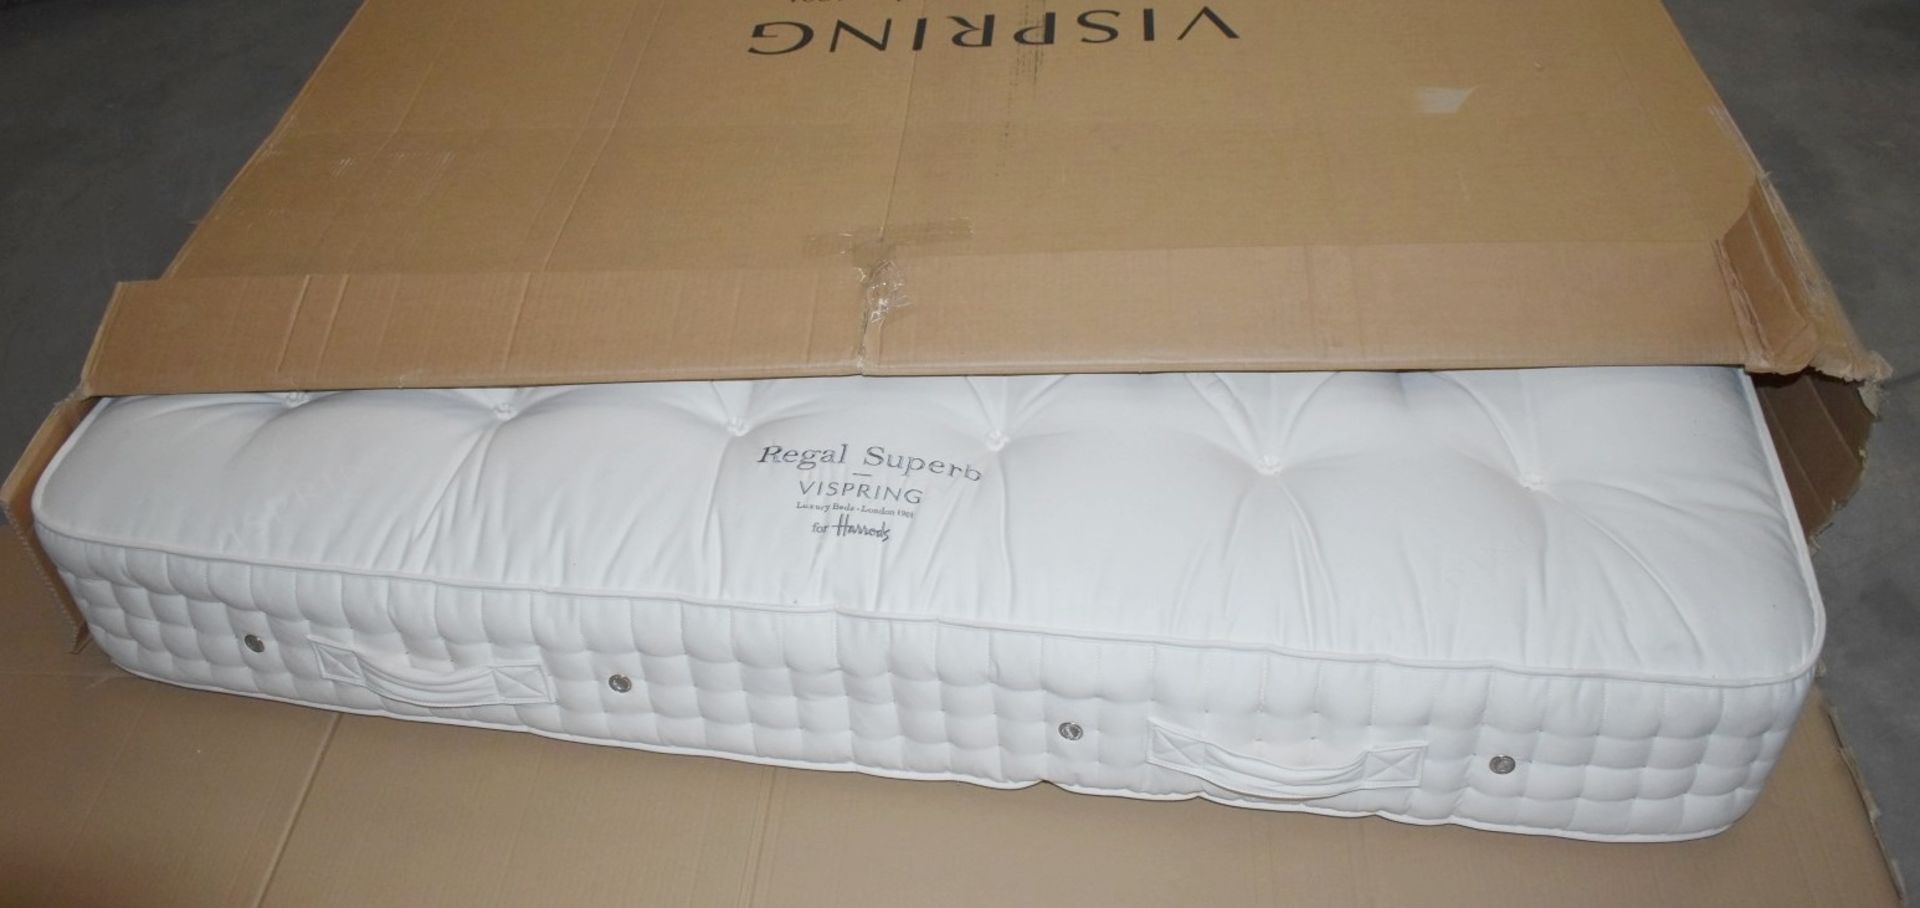 1 x VISPRING 'Regal Superb' Super-King Mattress With A VISPRING Prestige Double Divan Bed Base 180x2 - Image 3 of 11